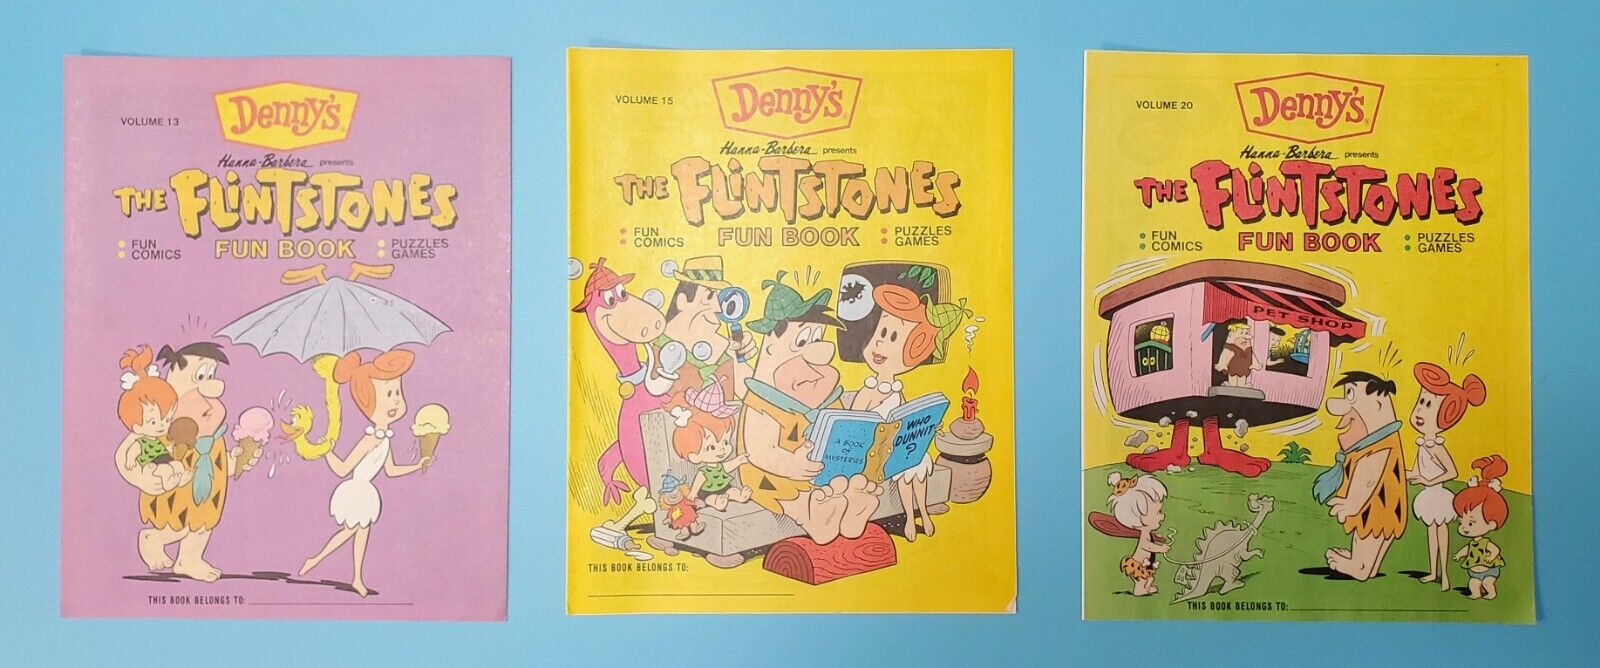 Vtg Flintstones Cartoon Denny\'s Fun Book Comics Lot (3) Volumes Hanna Barbera 